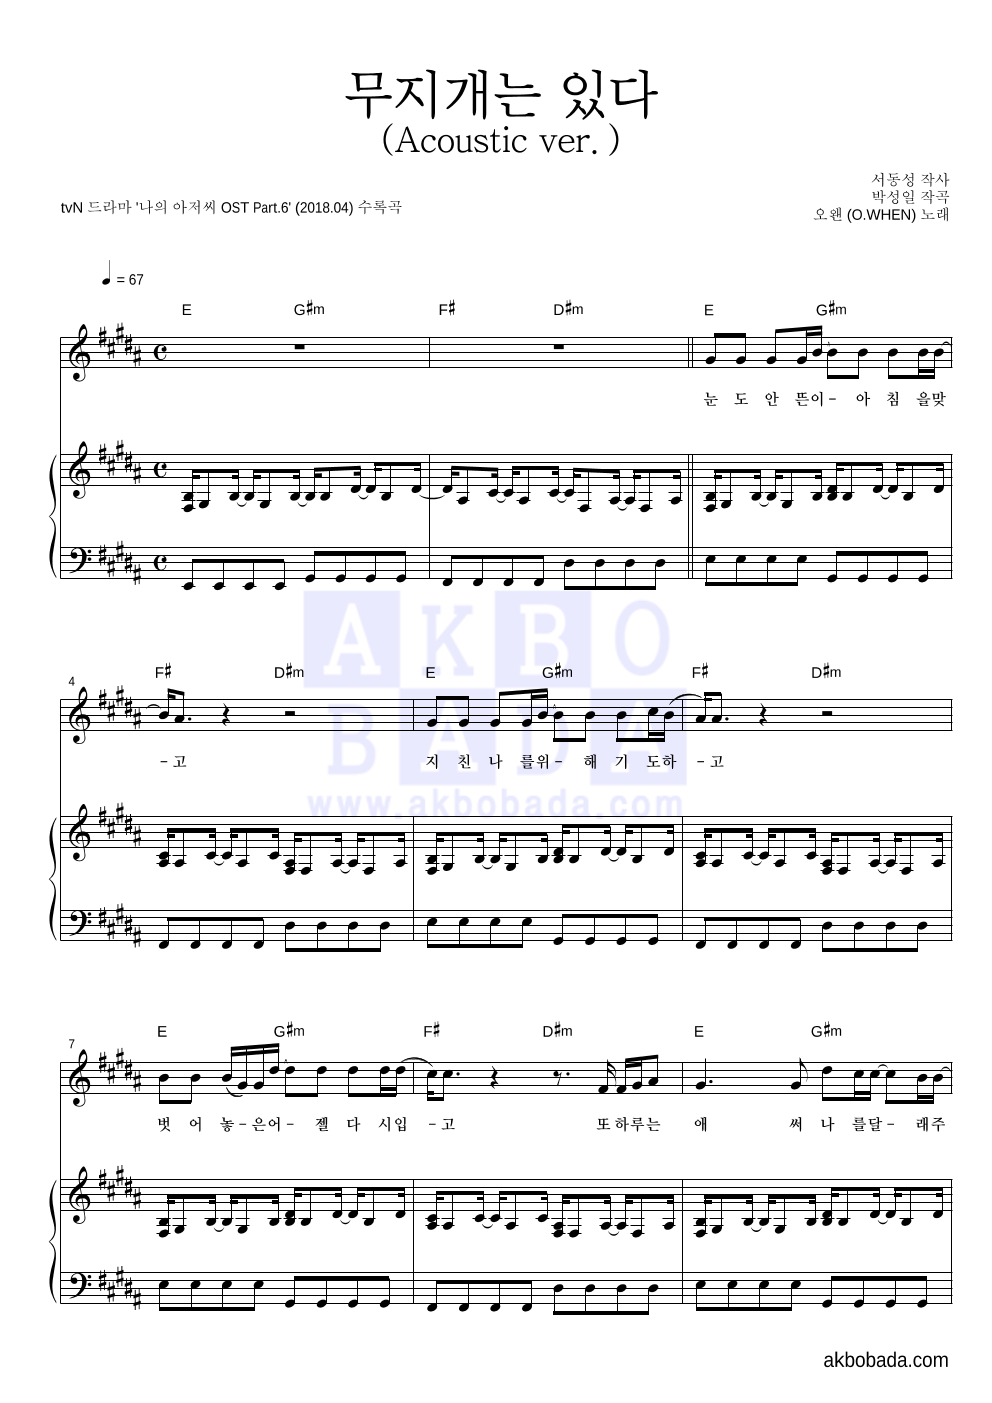 오왠 - 무지개는 있다 (Acoustic ver.) 피아노 3단 악보 